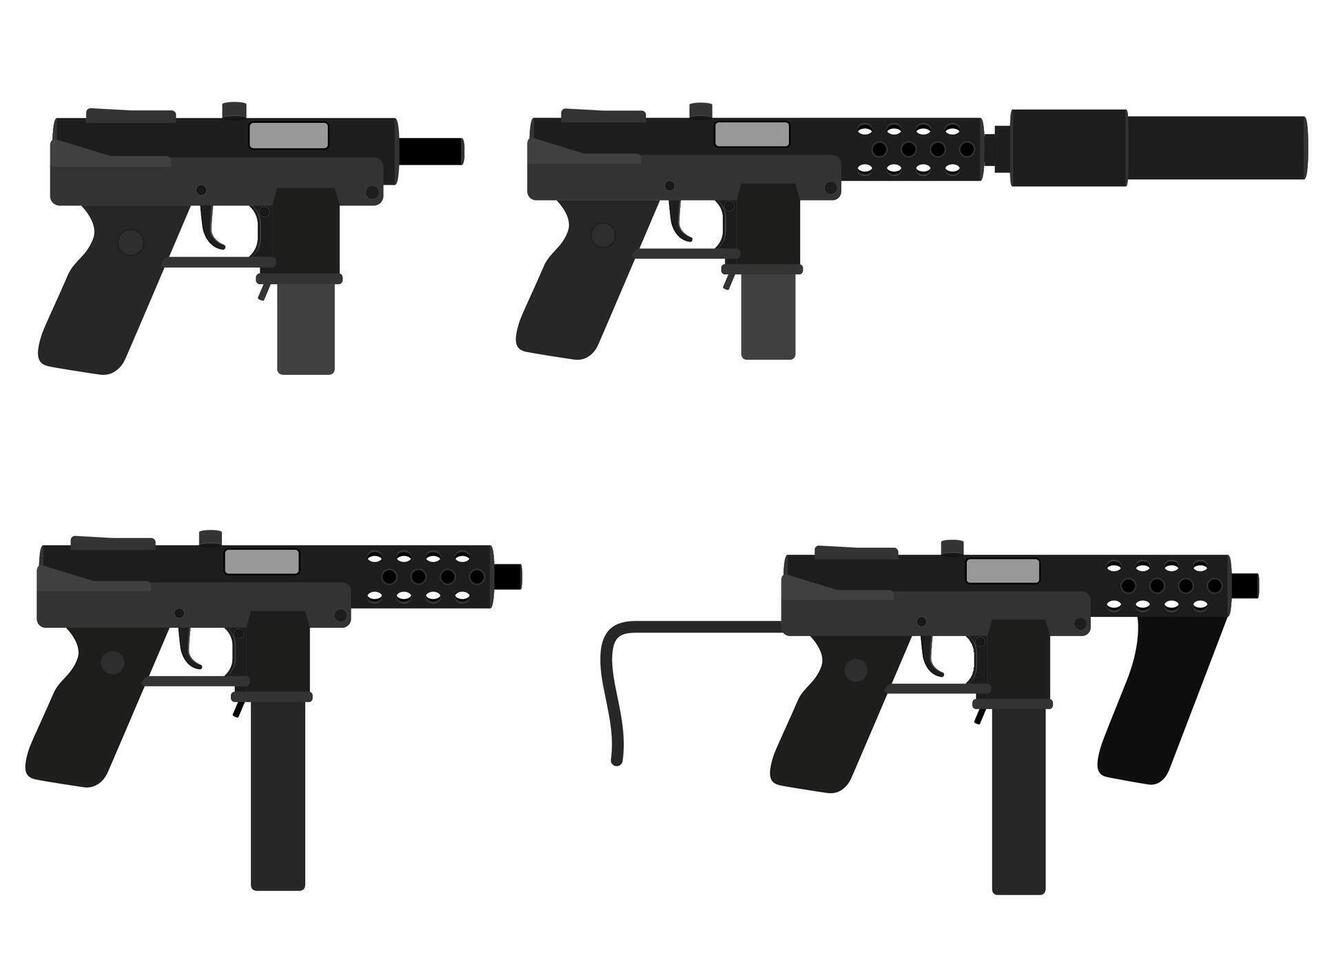 machinepistool handpistool wapens voorraad vectorillustratie geïsoleerd op een witte achtergrond vector